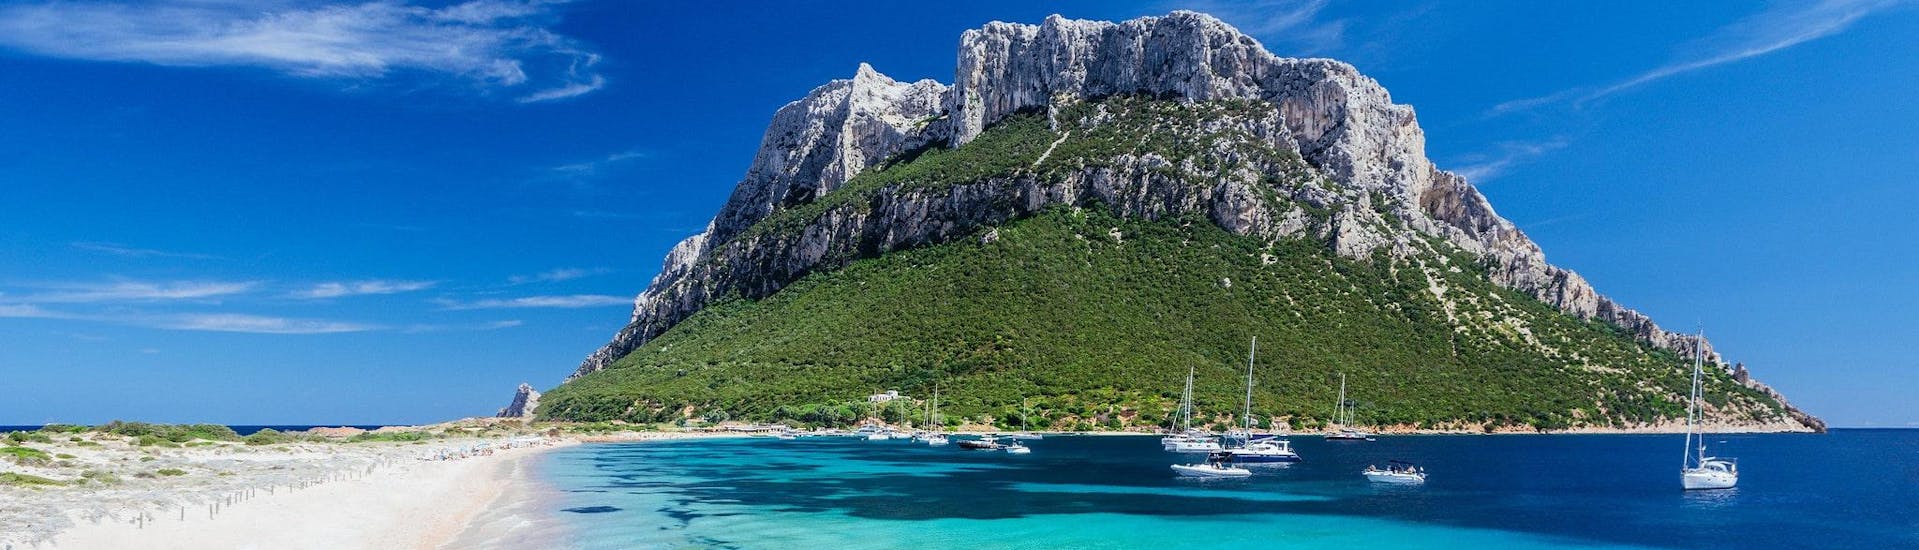 Vue de l'île de Tavolara, destination populaire pour les balades en bateau depuis Olbia en Sardaigne.